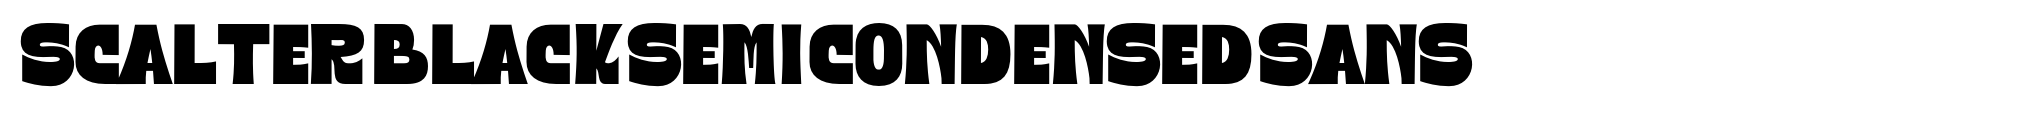 Scalter Black Semi Condensed Sans image